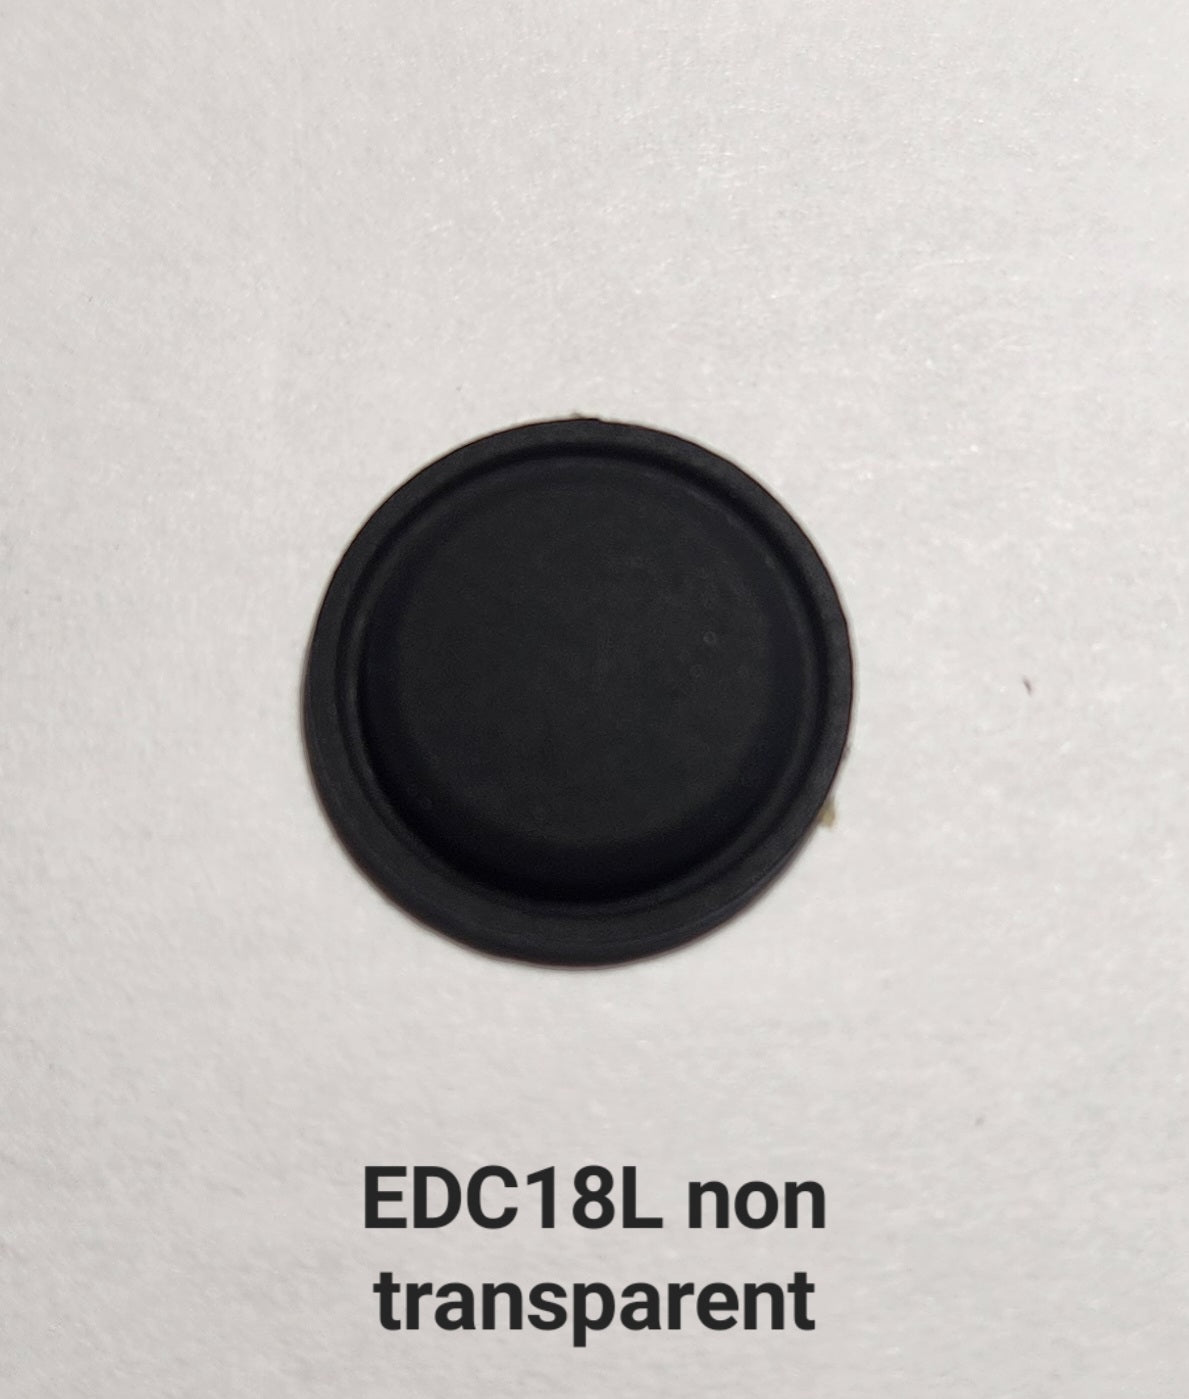 Lumintop Flashlight Replacement Rubber Button EDC18L (NON-TRANSPARENT)